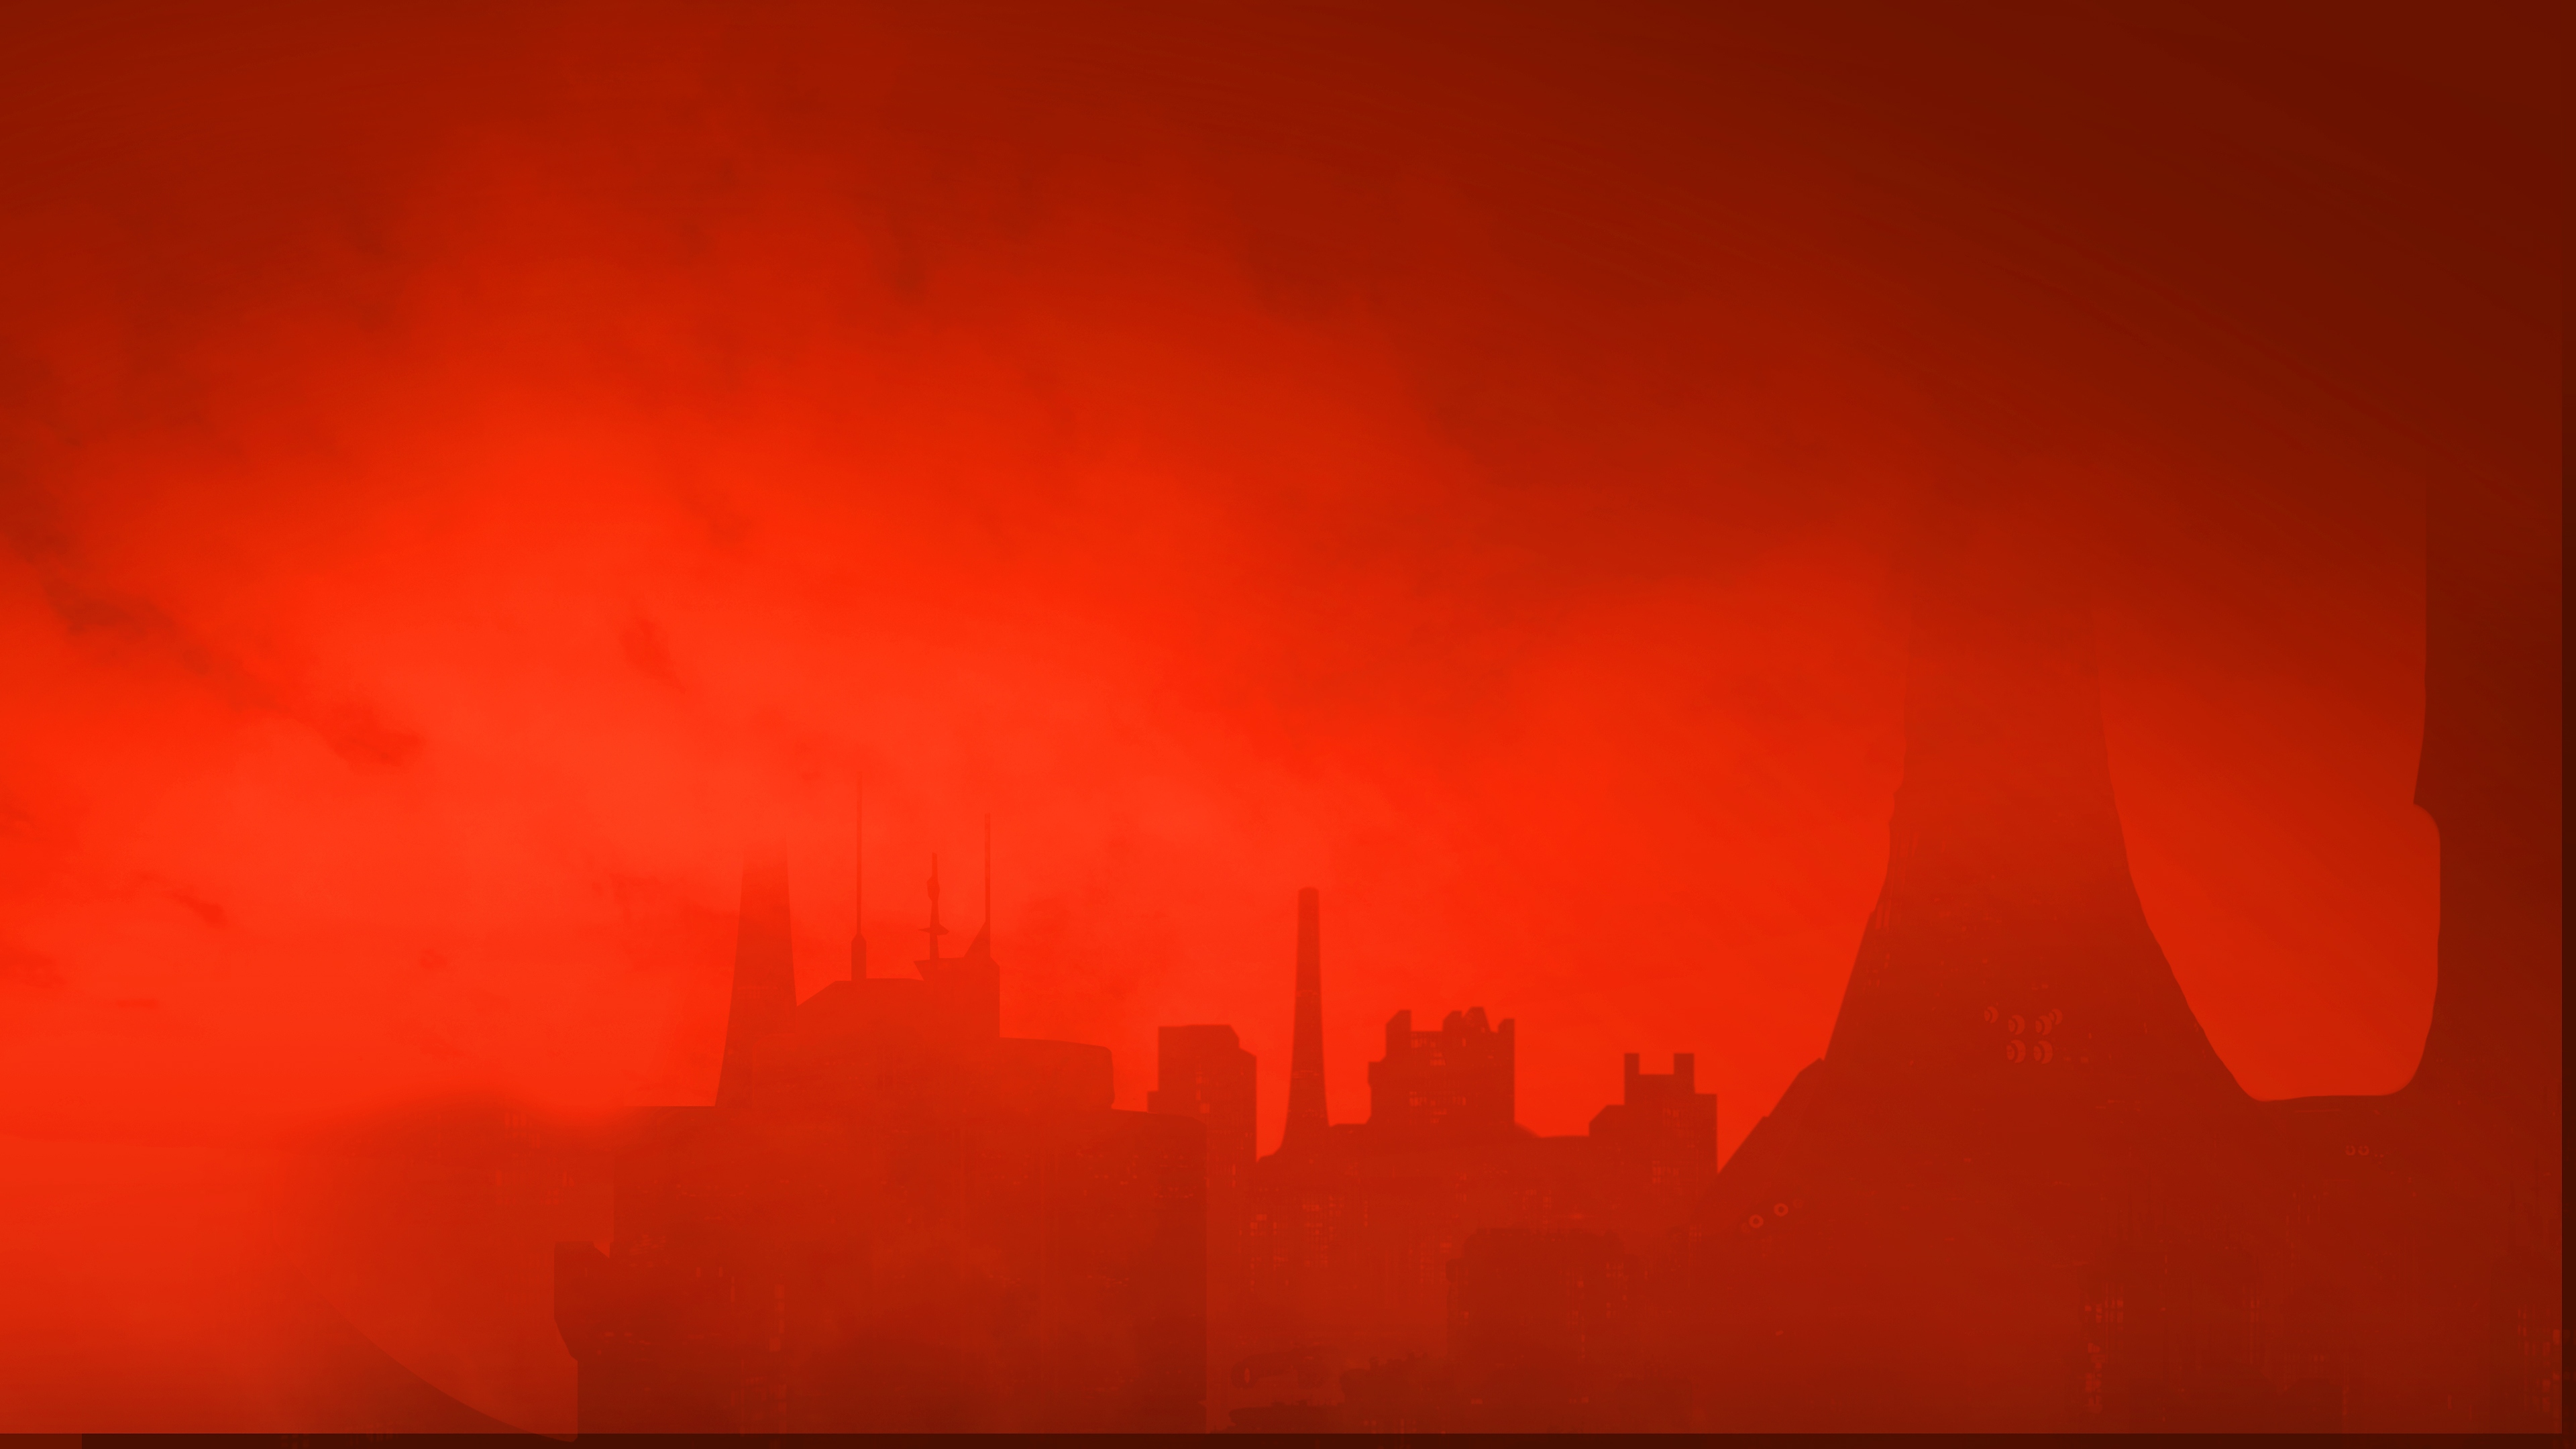 Image de fond The Ascent - une skyline sous un ciel rougeoyant